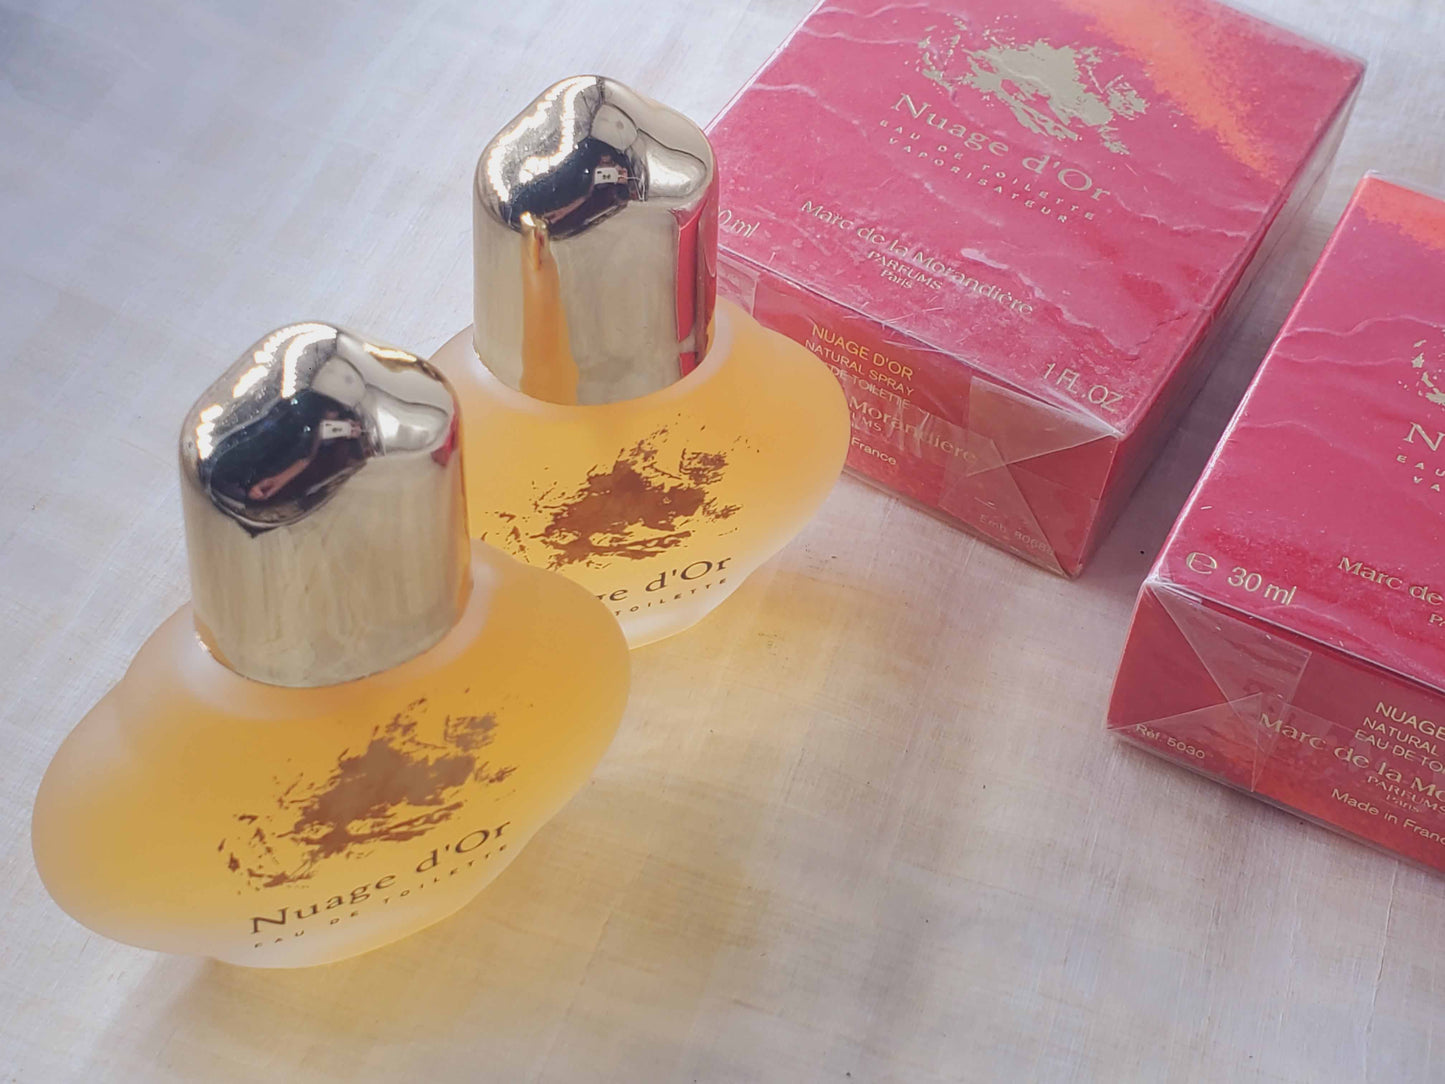 Nuage d'Or Marc de la Morandiere for women EDT Spray 50+50 ml 3.4 oz OR 30+30 ml 2 oz, Vintage, Rare, As Pic